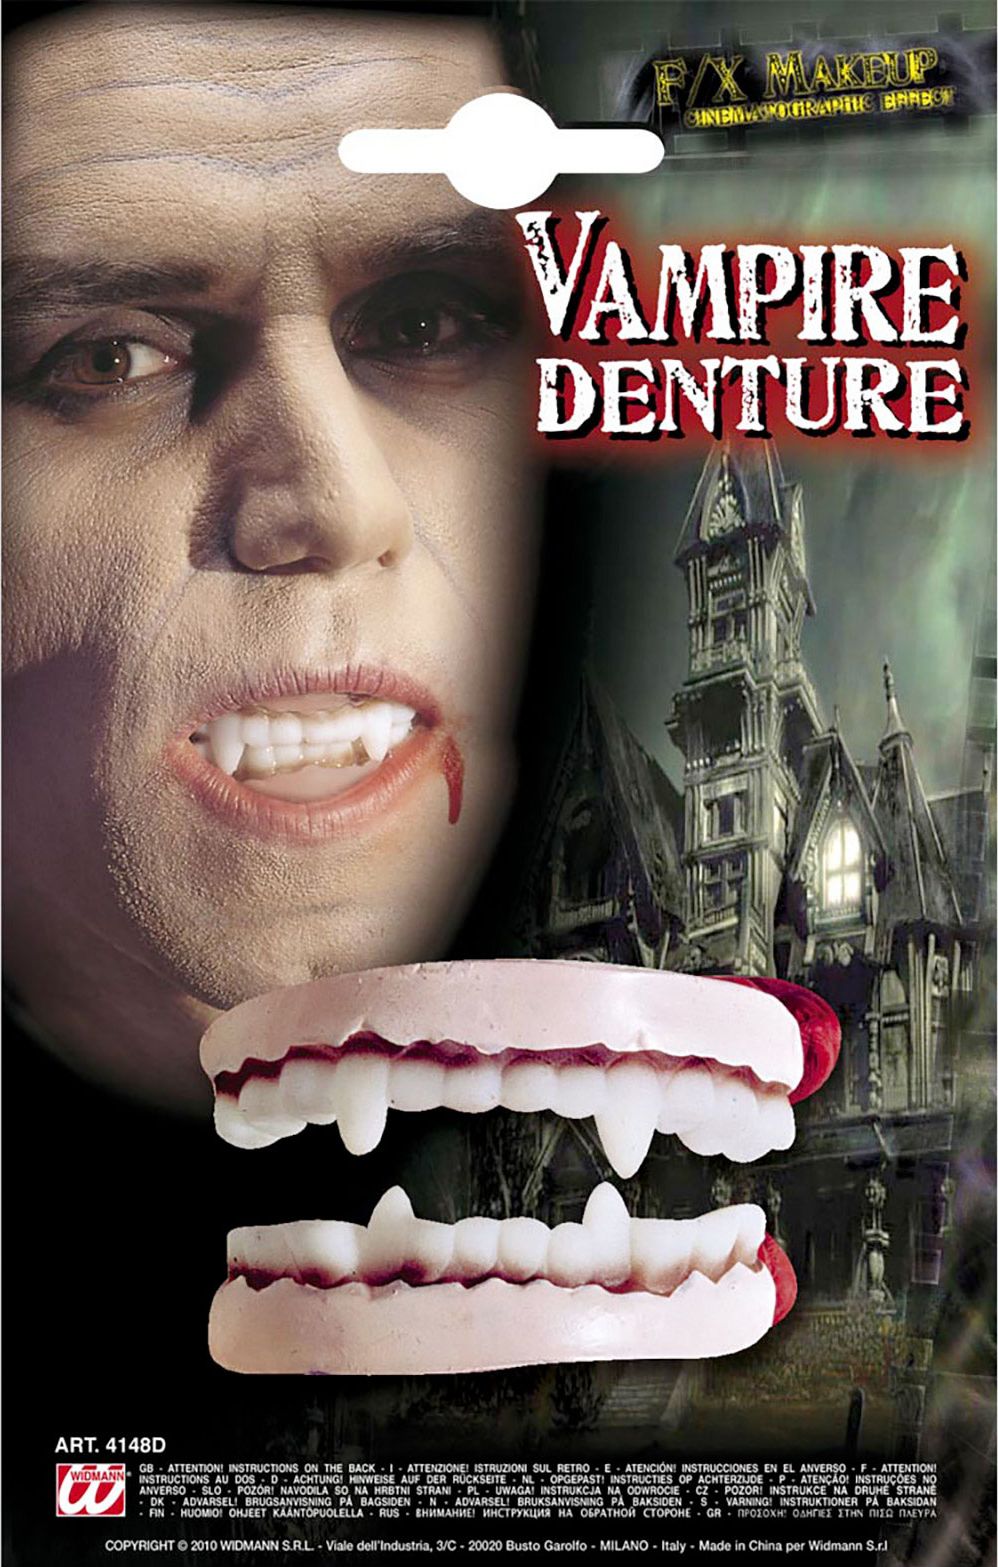 Vampier dracula tanden